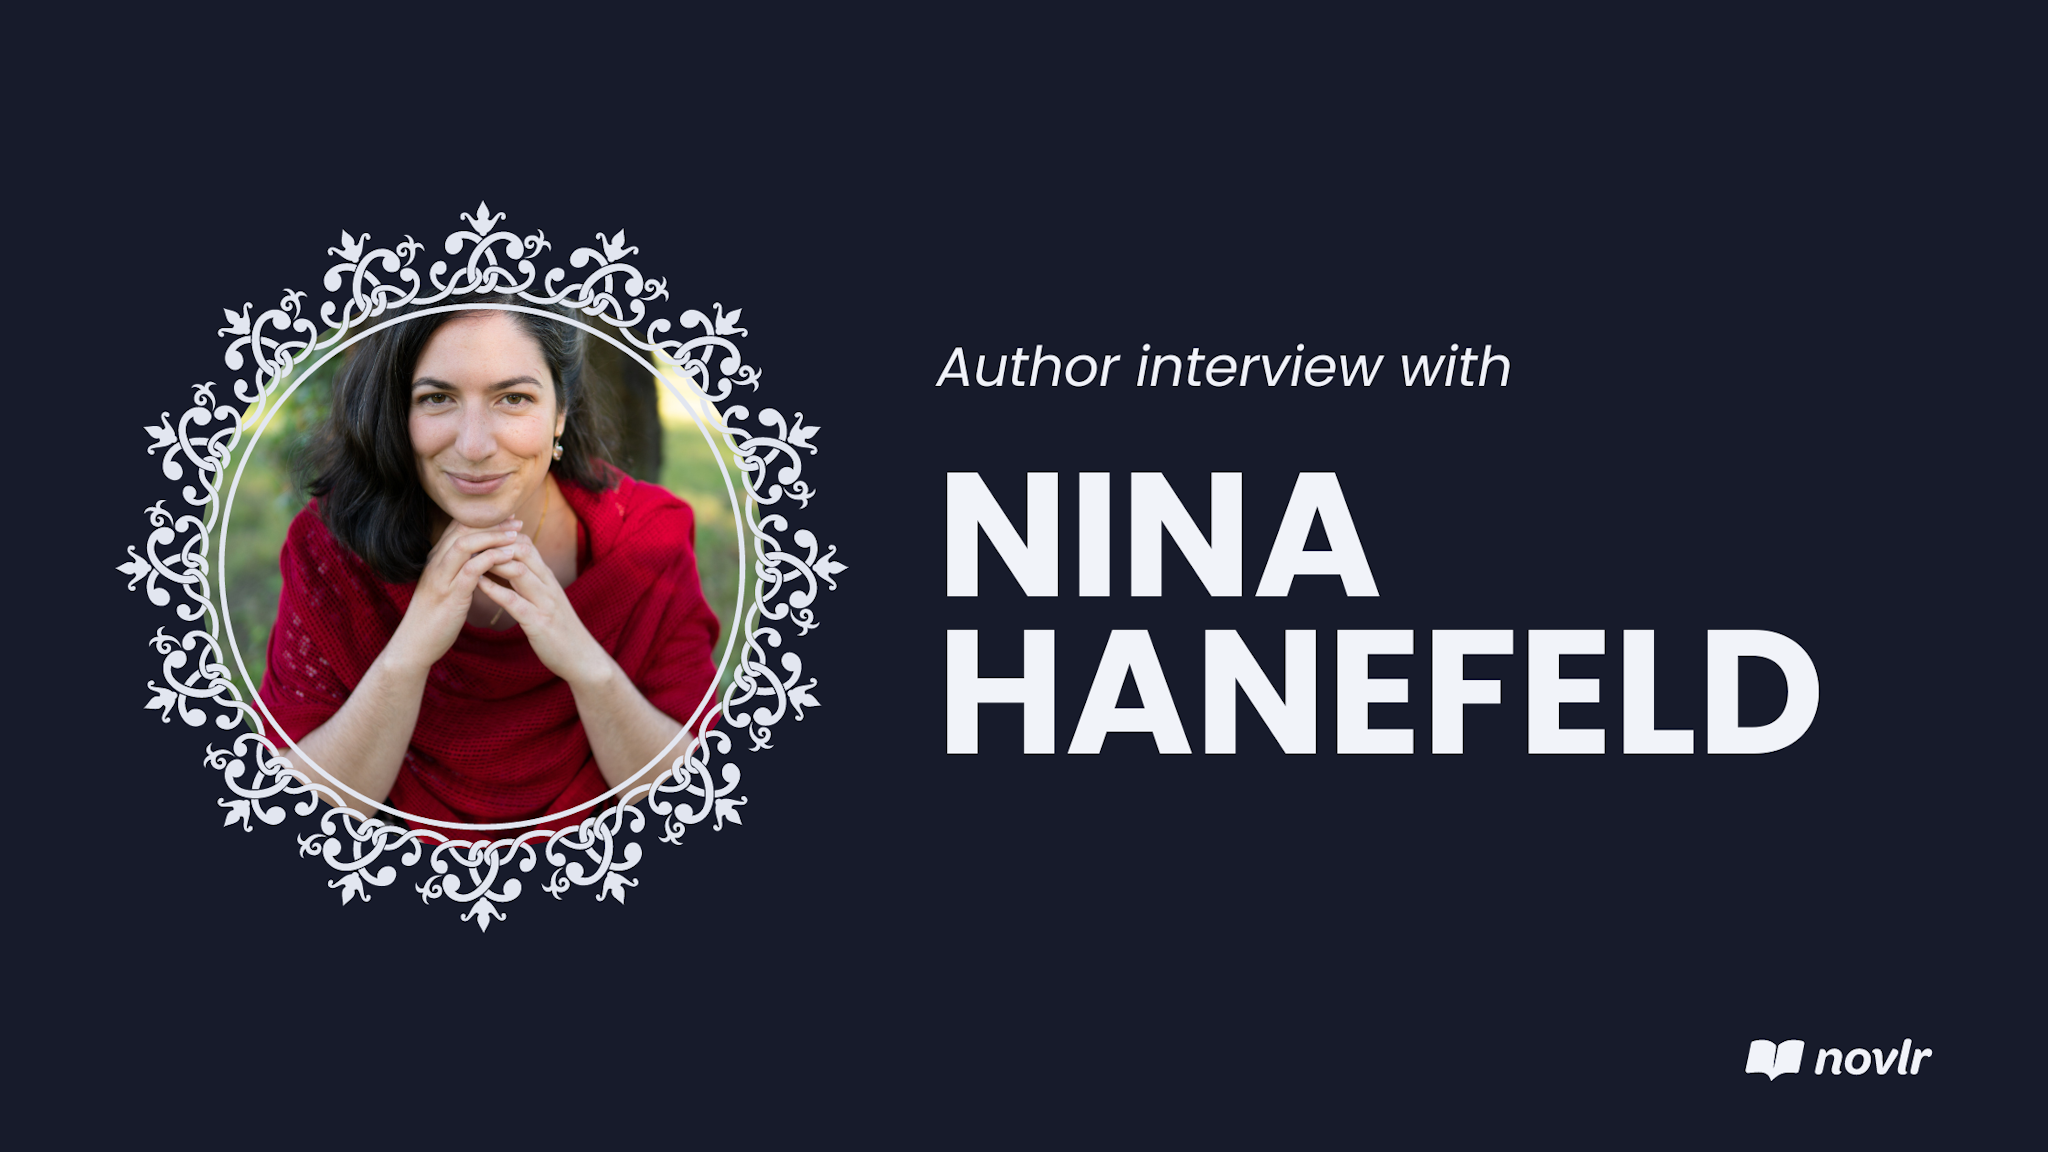 Nina Hanefeld author interview